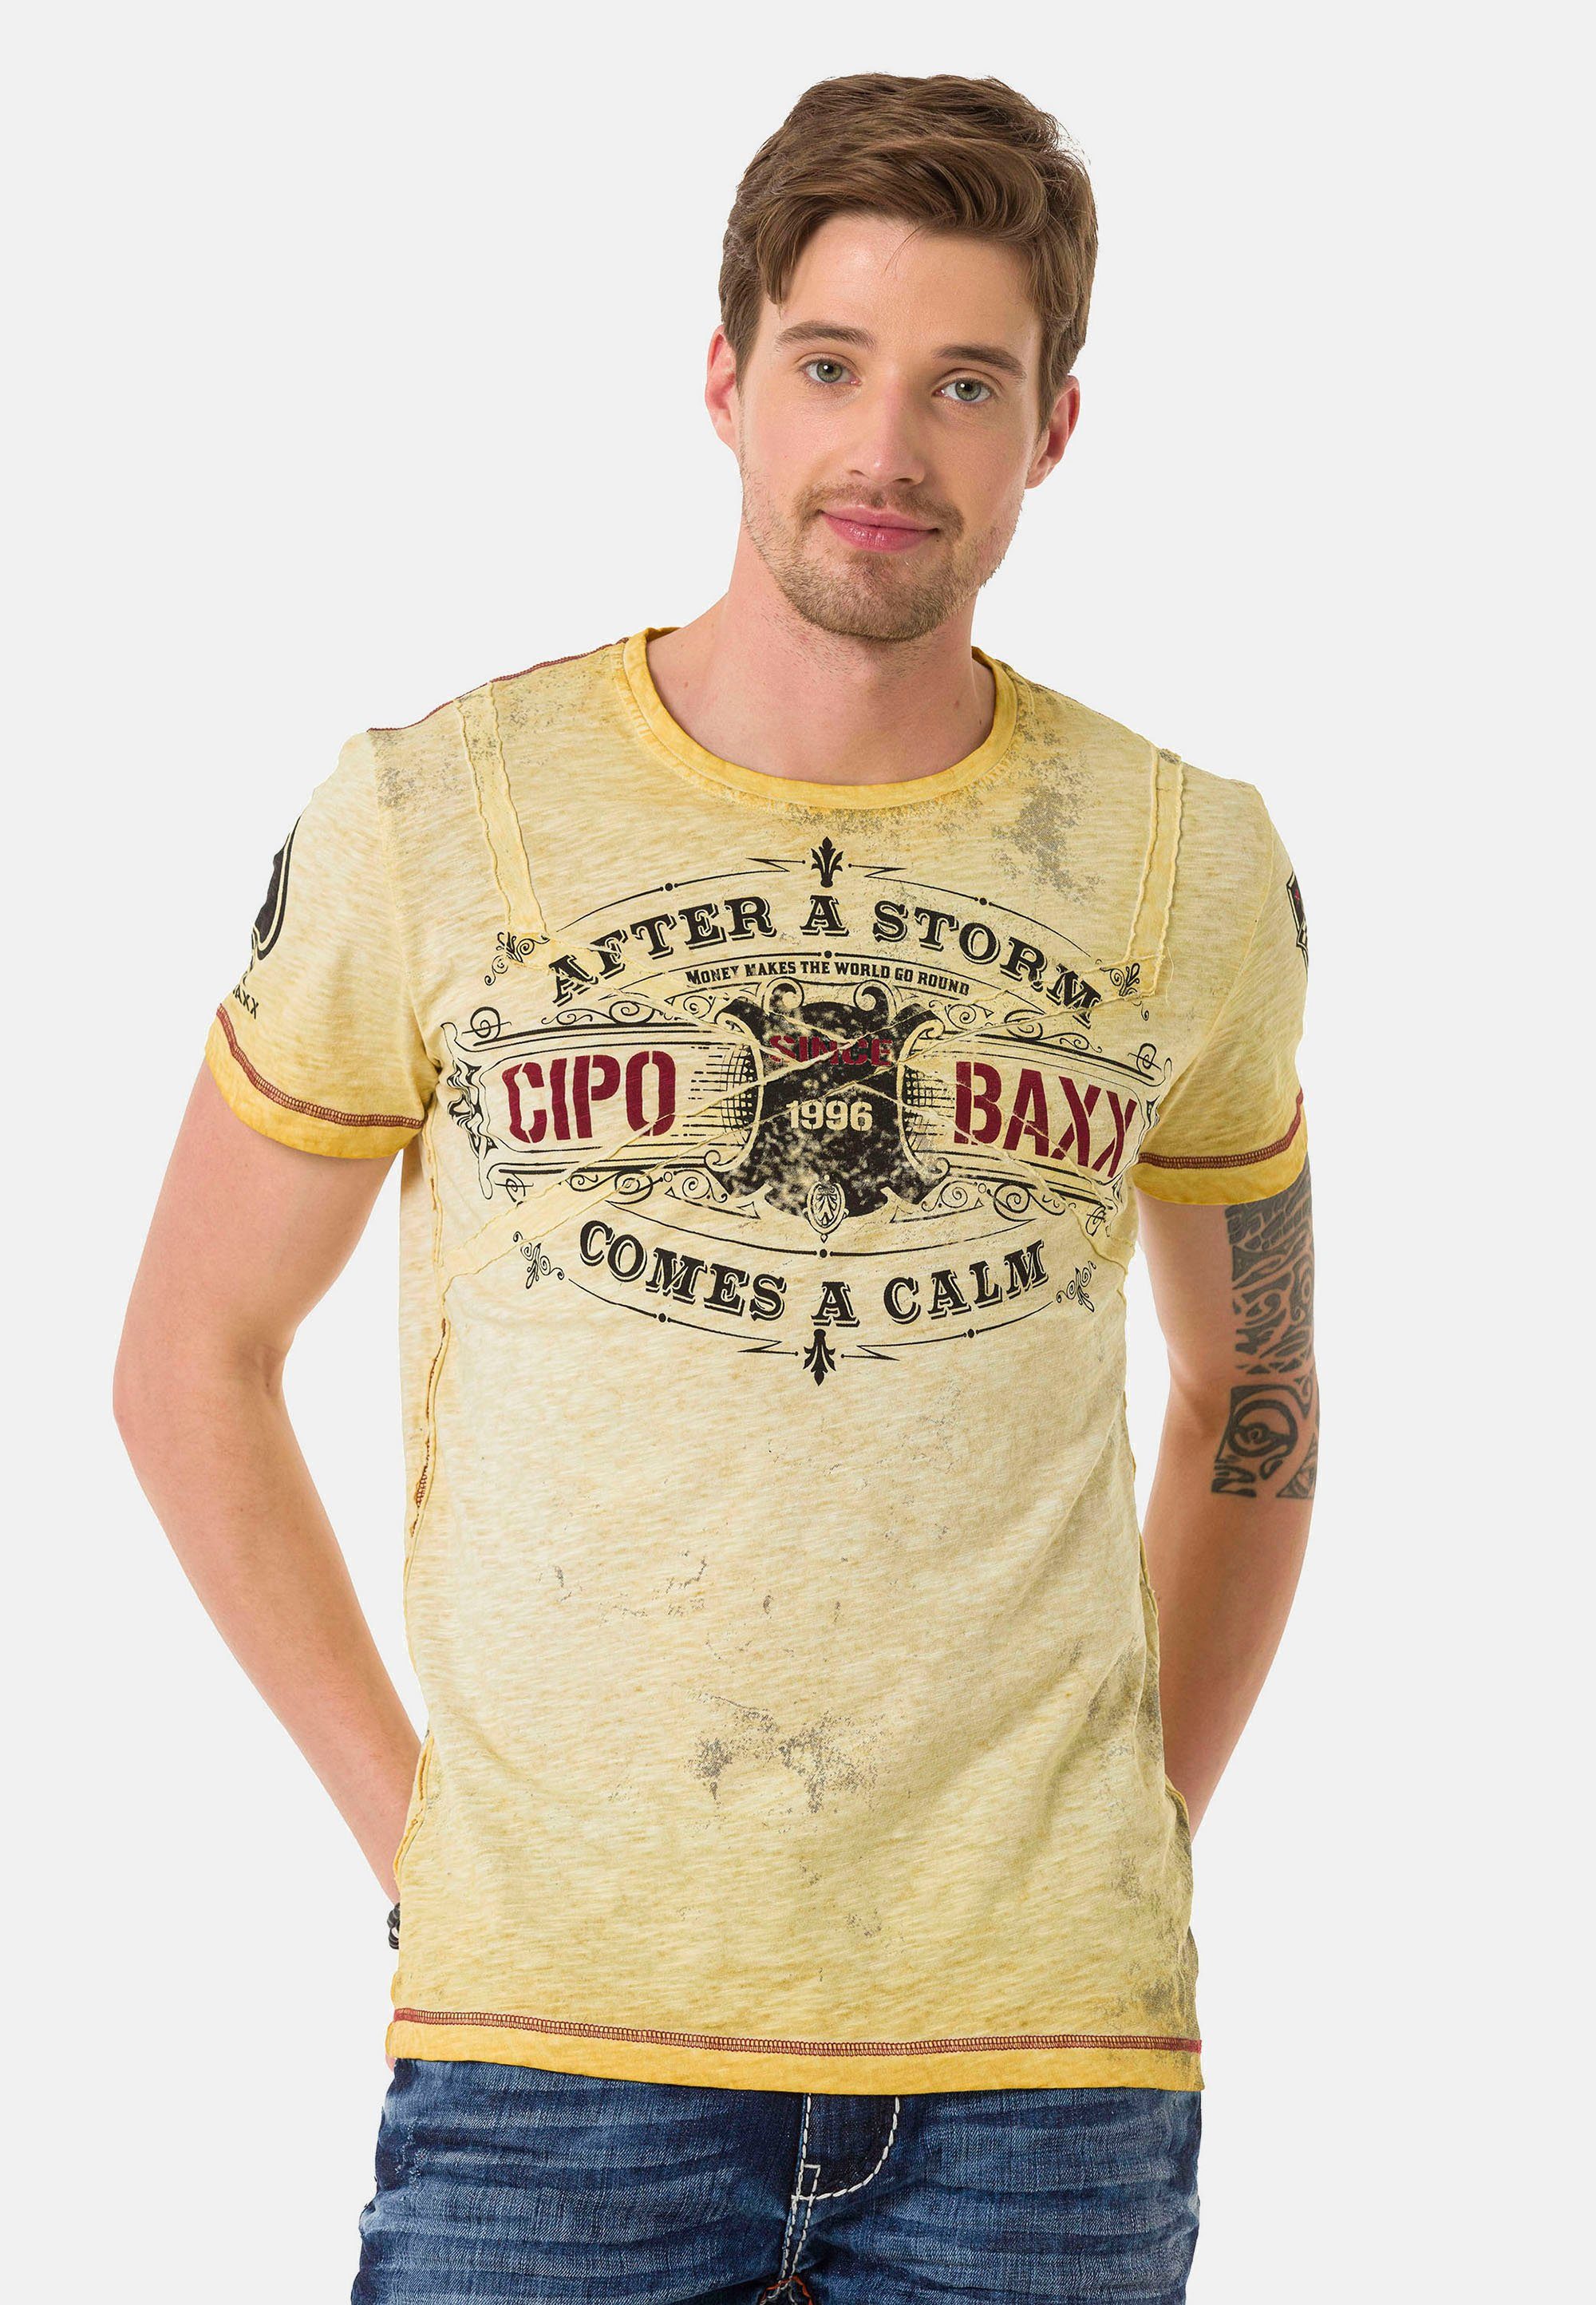 Cipo & Baxx T-Shirt im VintageLook gelb